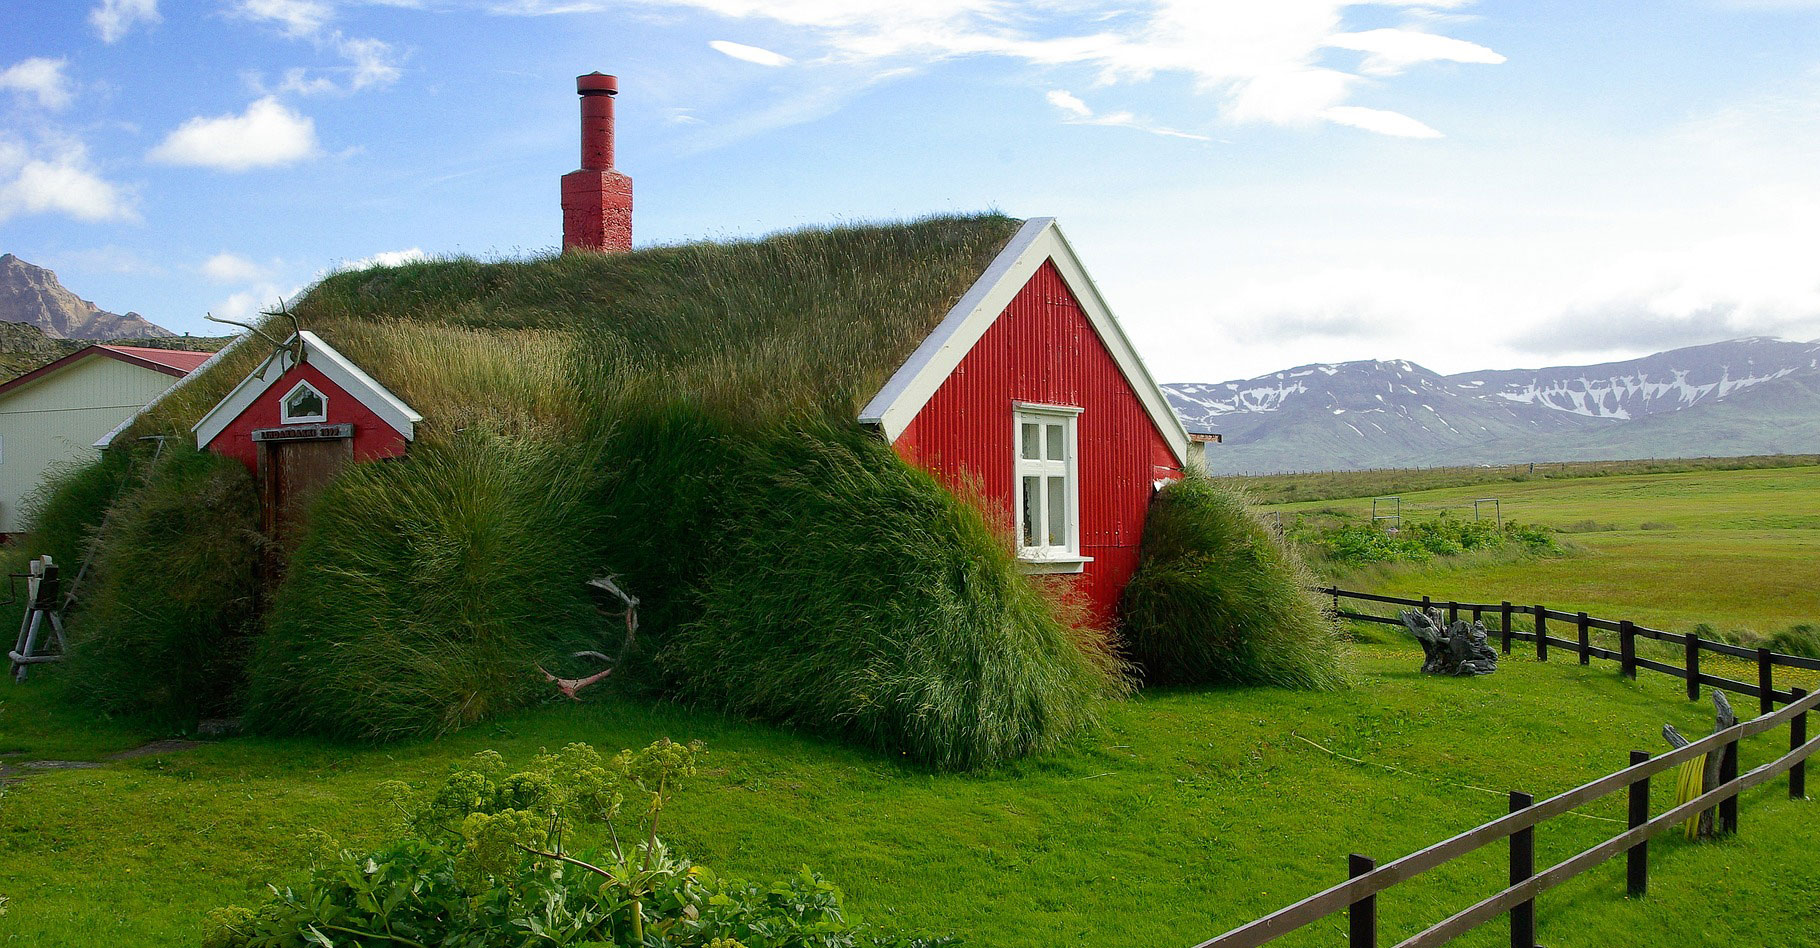 Toiture végétalisée d'une maison en Islande. © Jackmac34, Pixabay, DP